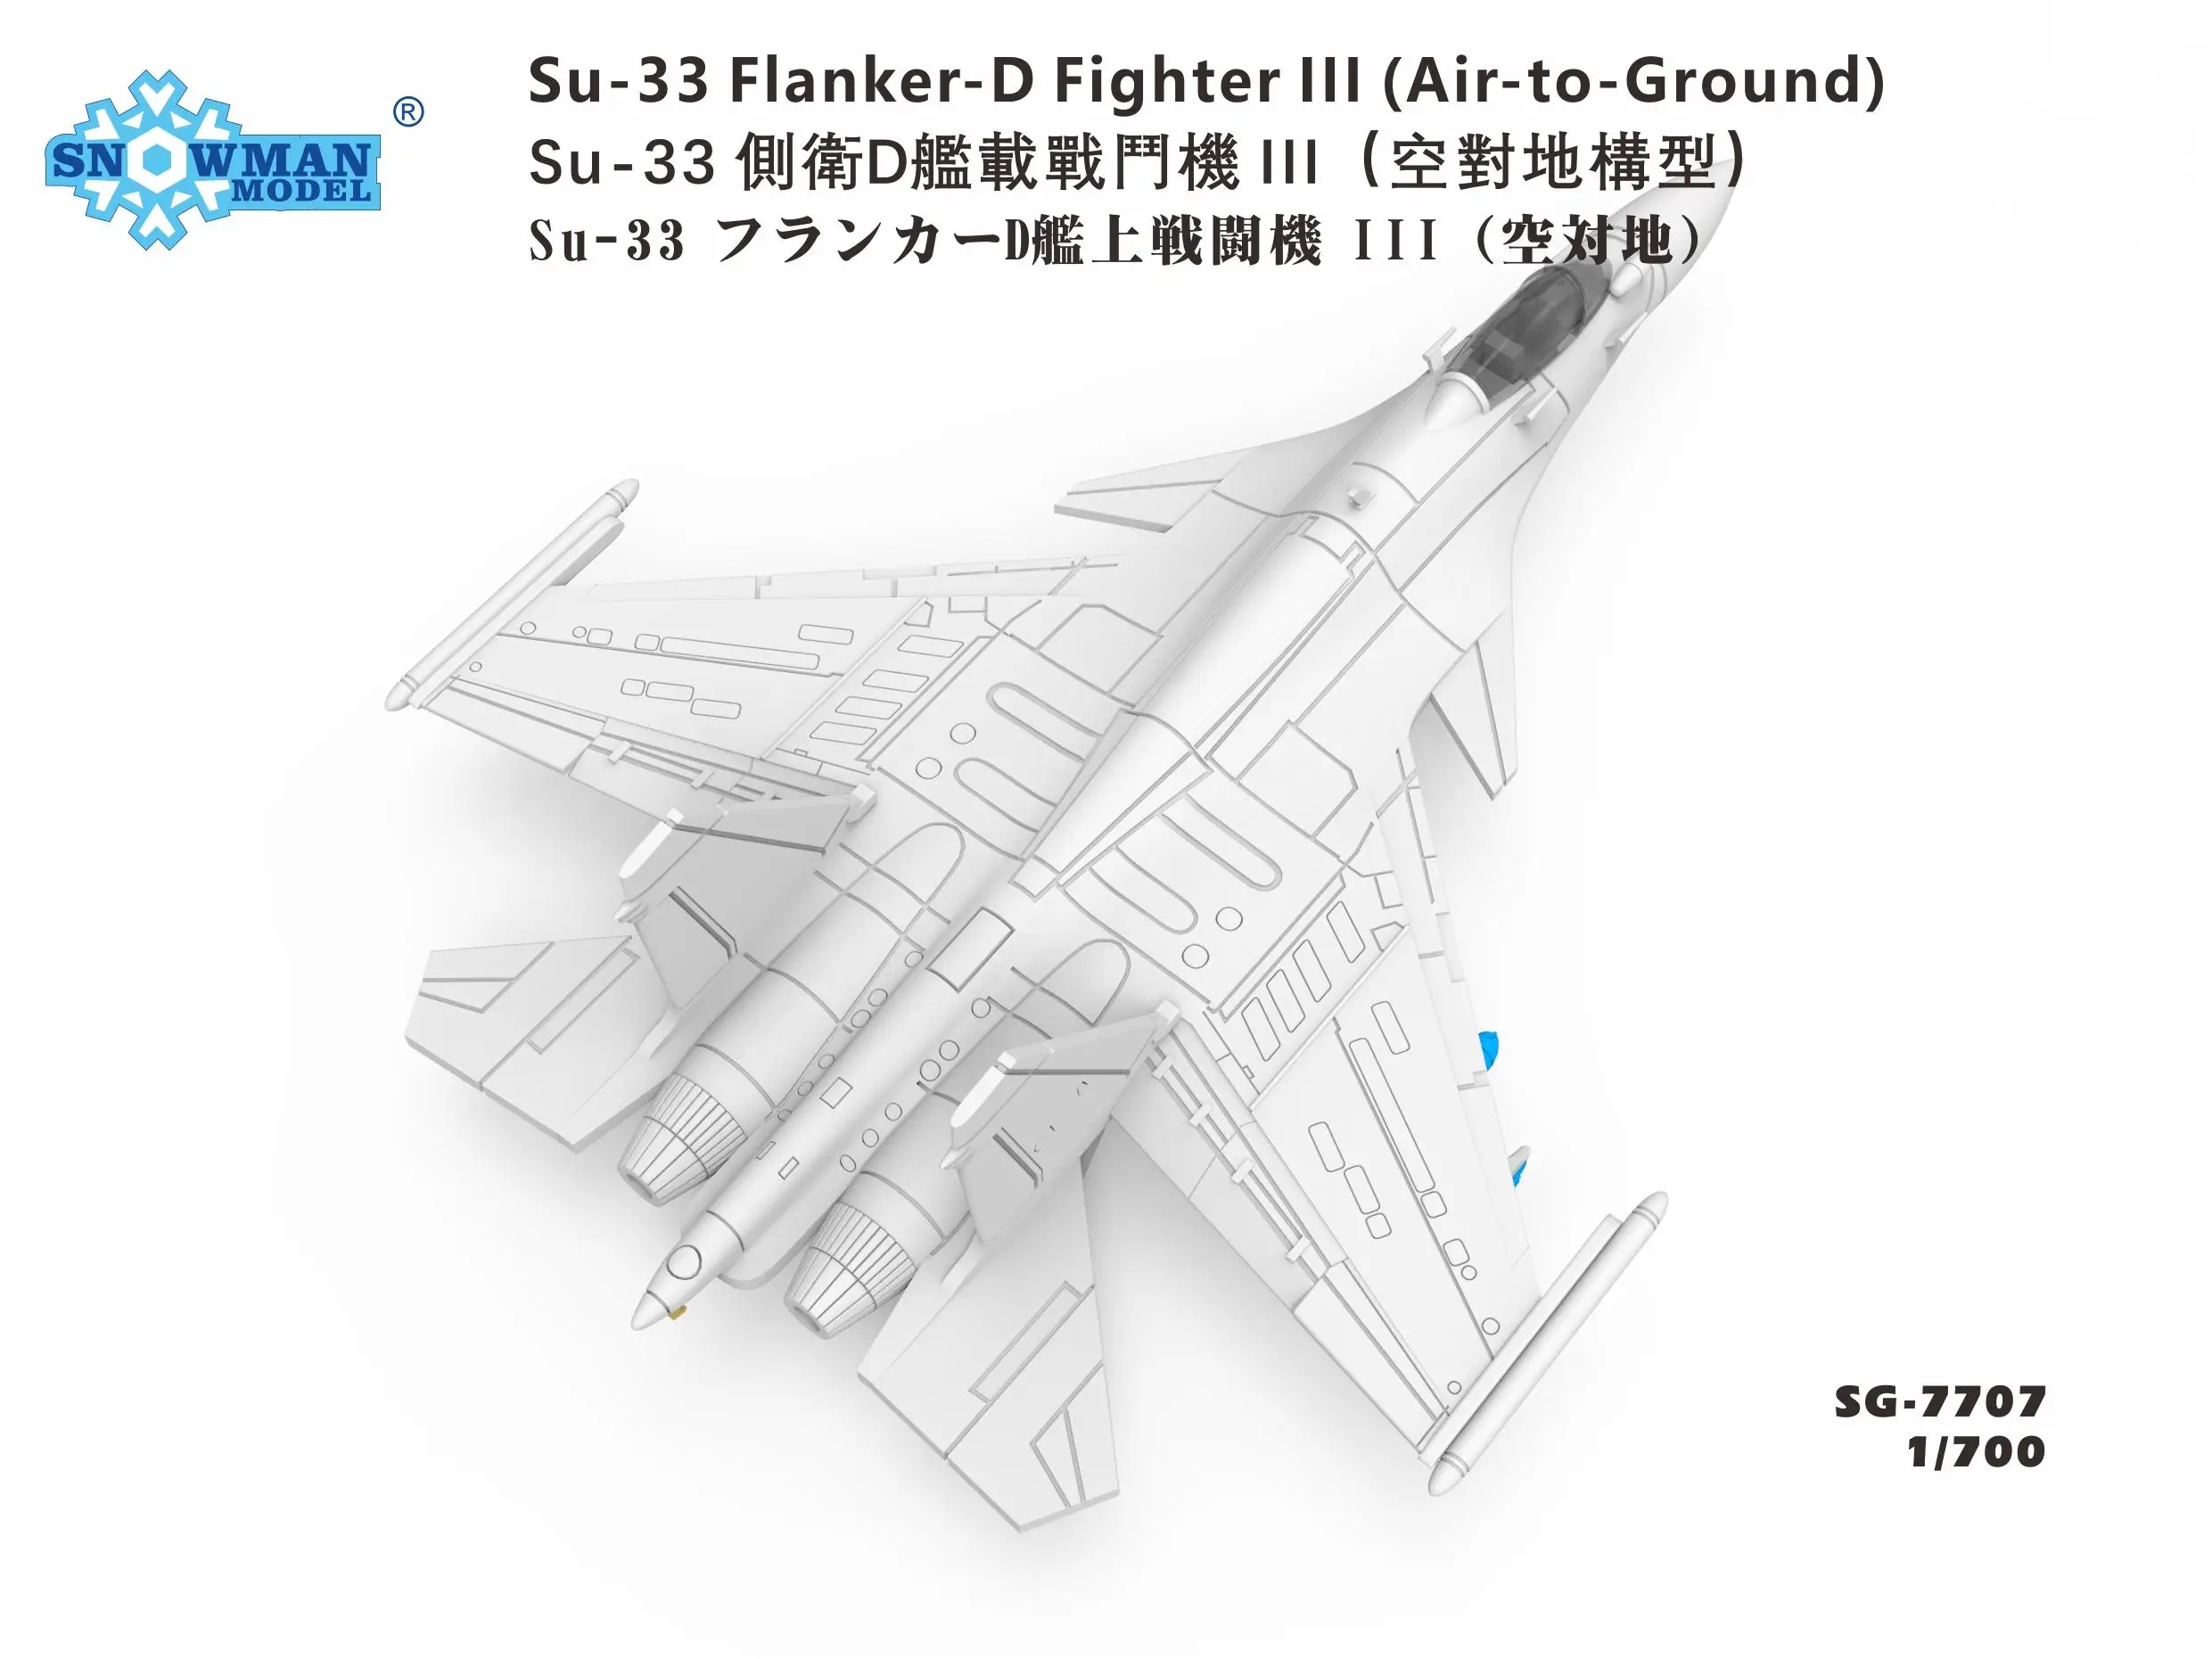 Snowman SG-7707 в масштабе 1/700 Истребитель Су-33 Flanker-d Ill (воздух-земля) - 2